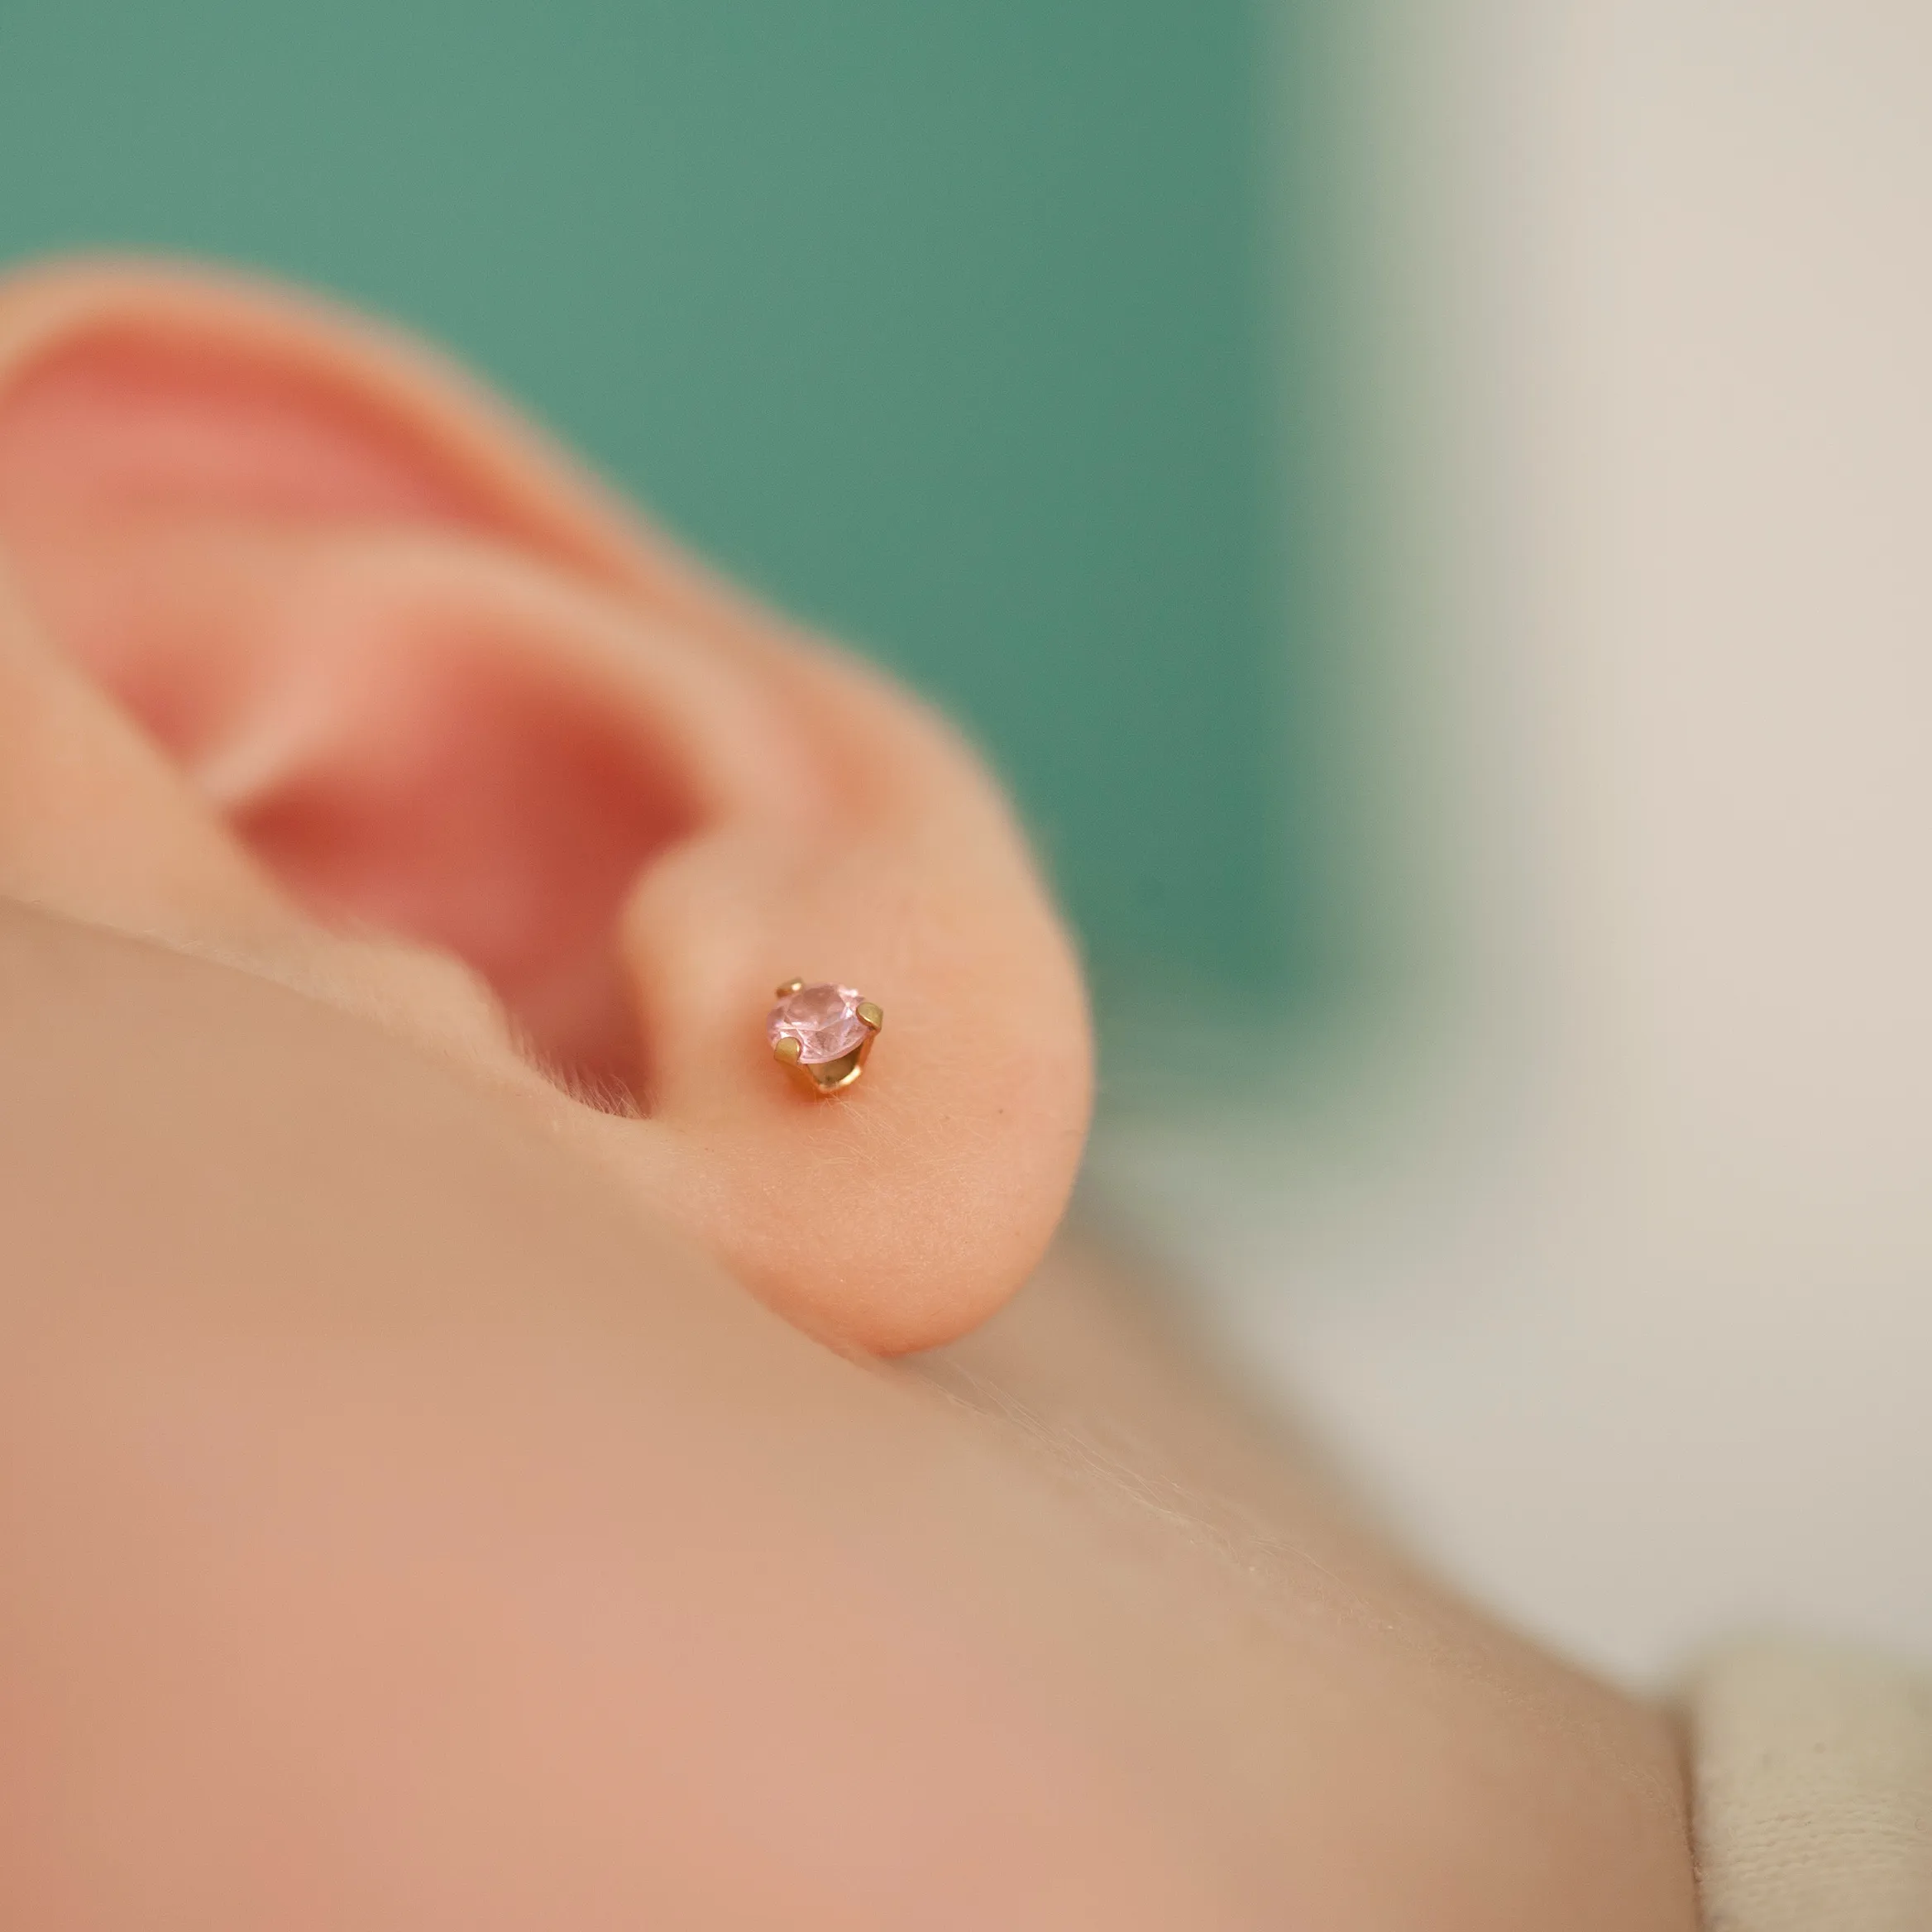 piercing babies' ears.webp (88 KB)